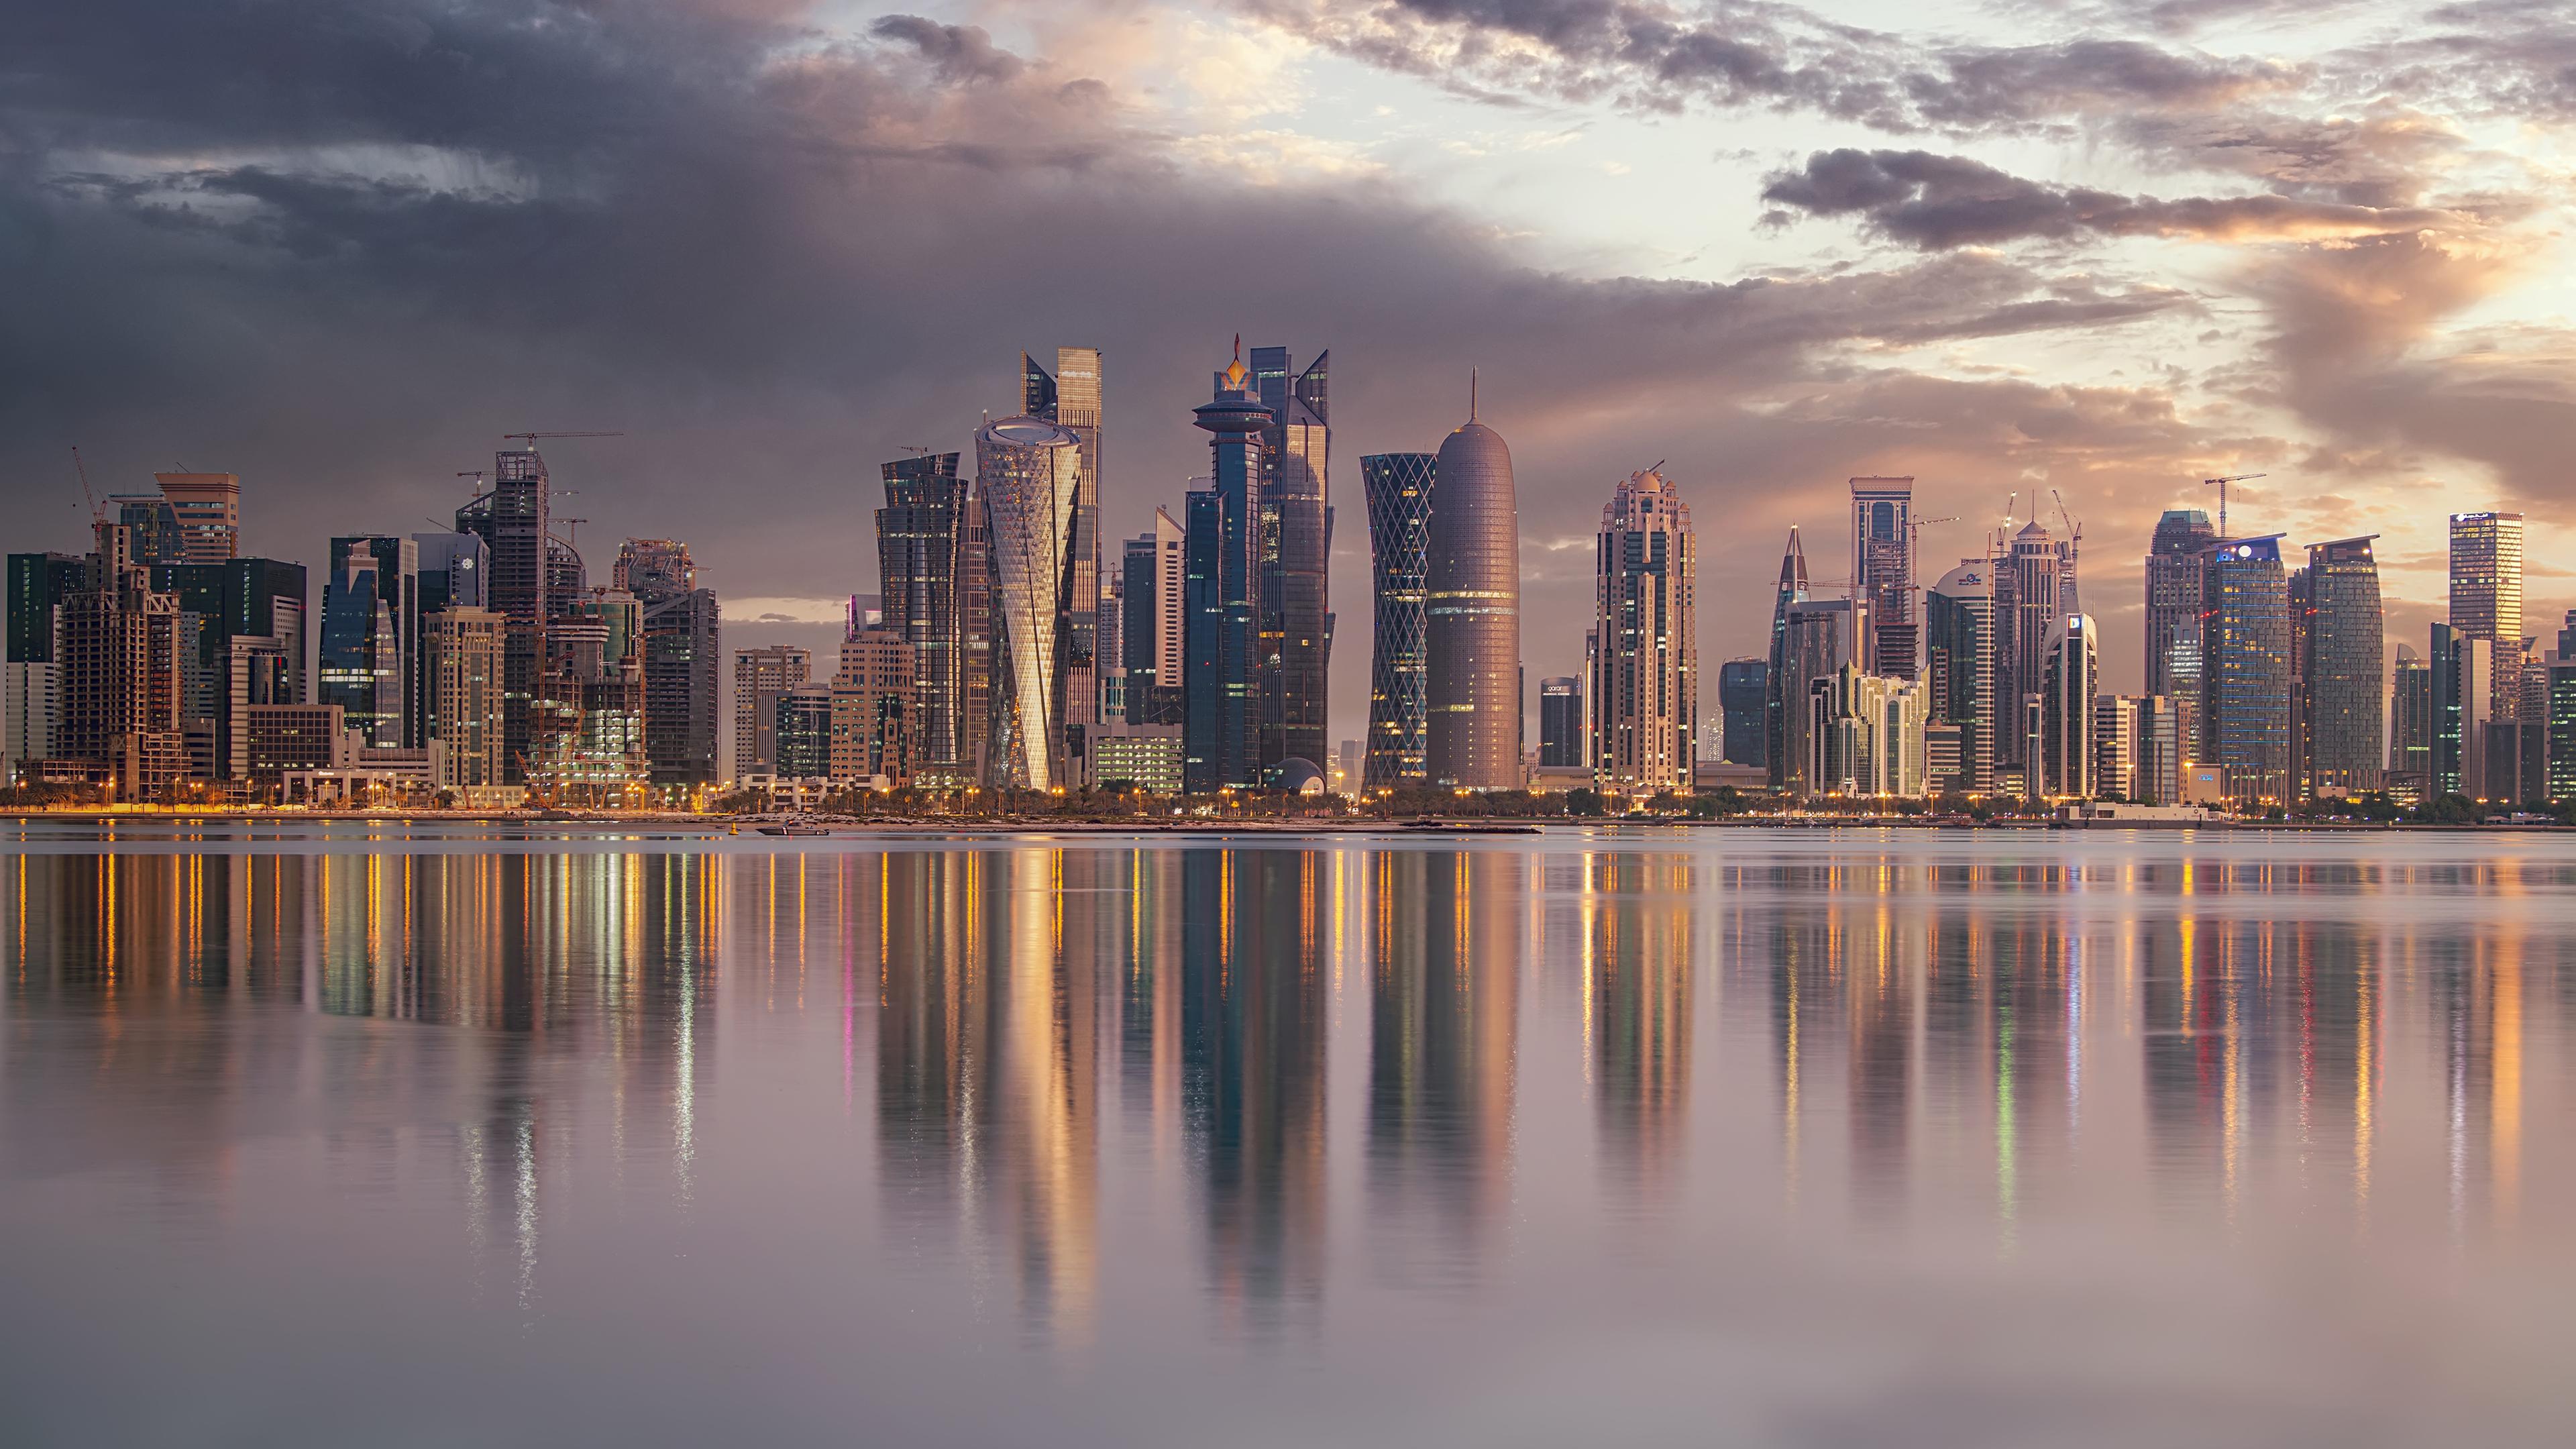 Küstenlandschaft Katars. Im Hintergrund sind viele gläserne Hochhäuser zu sehen, direkt an der Küste.